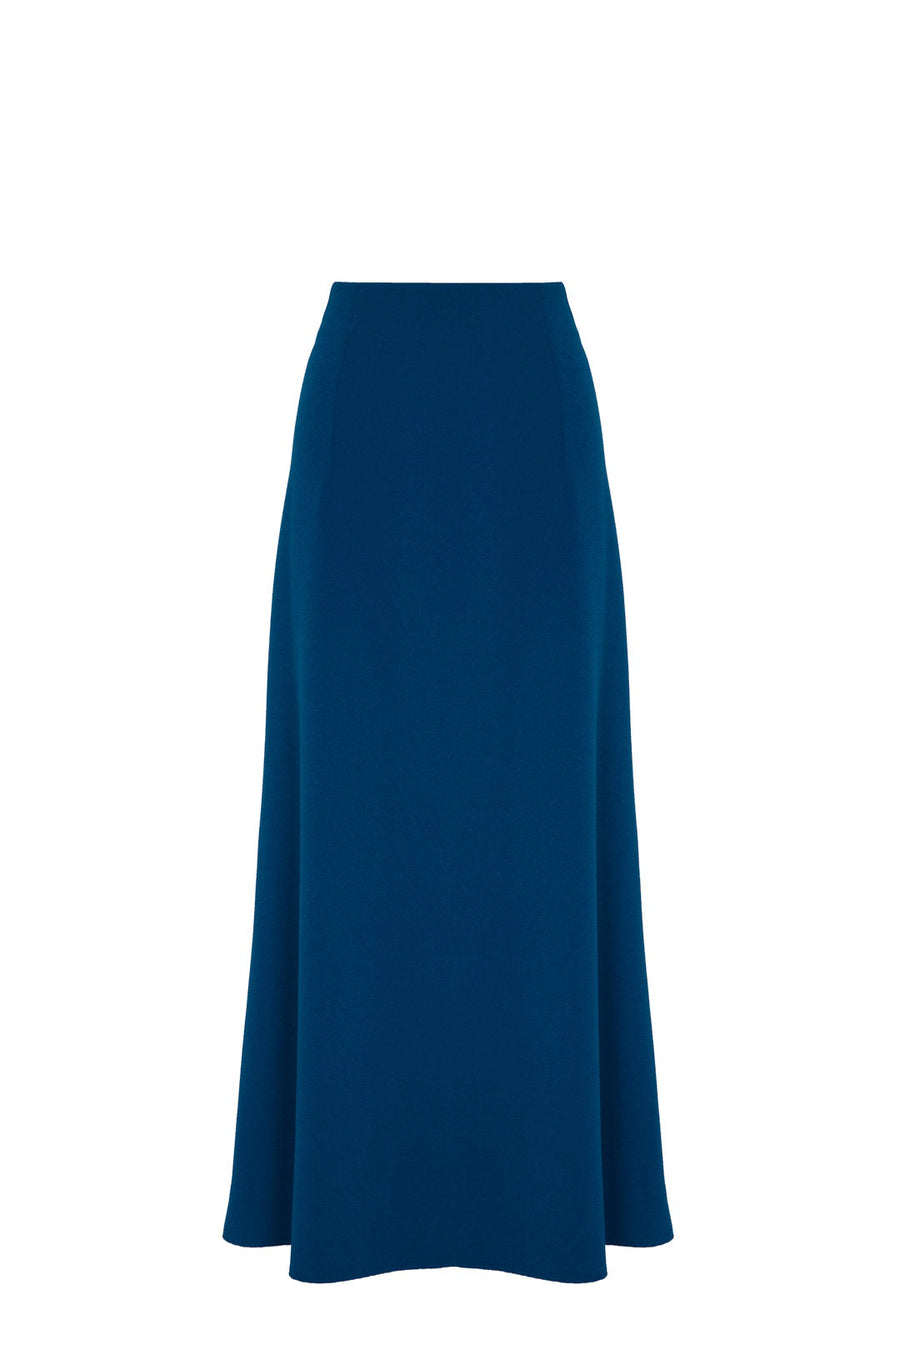 Falda midi azul con corte evasé